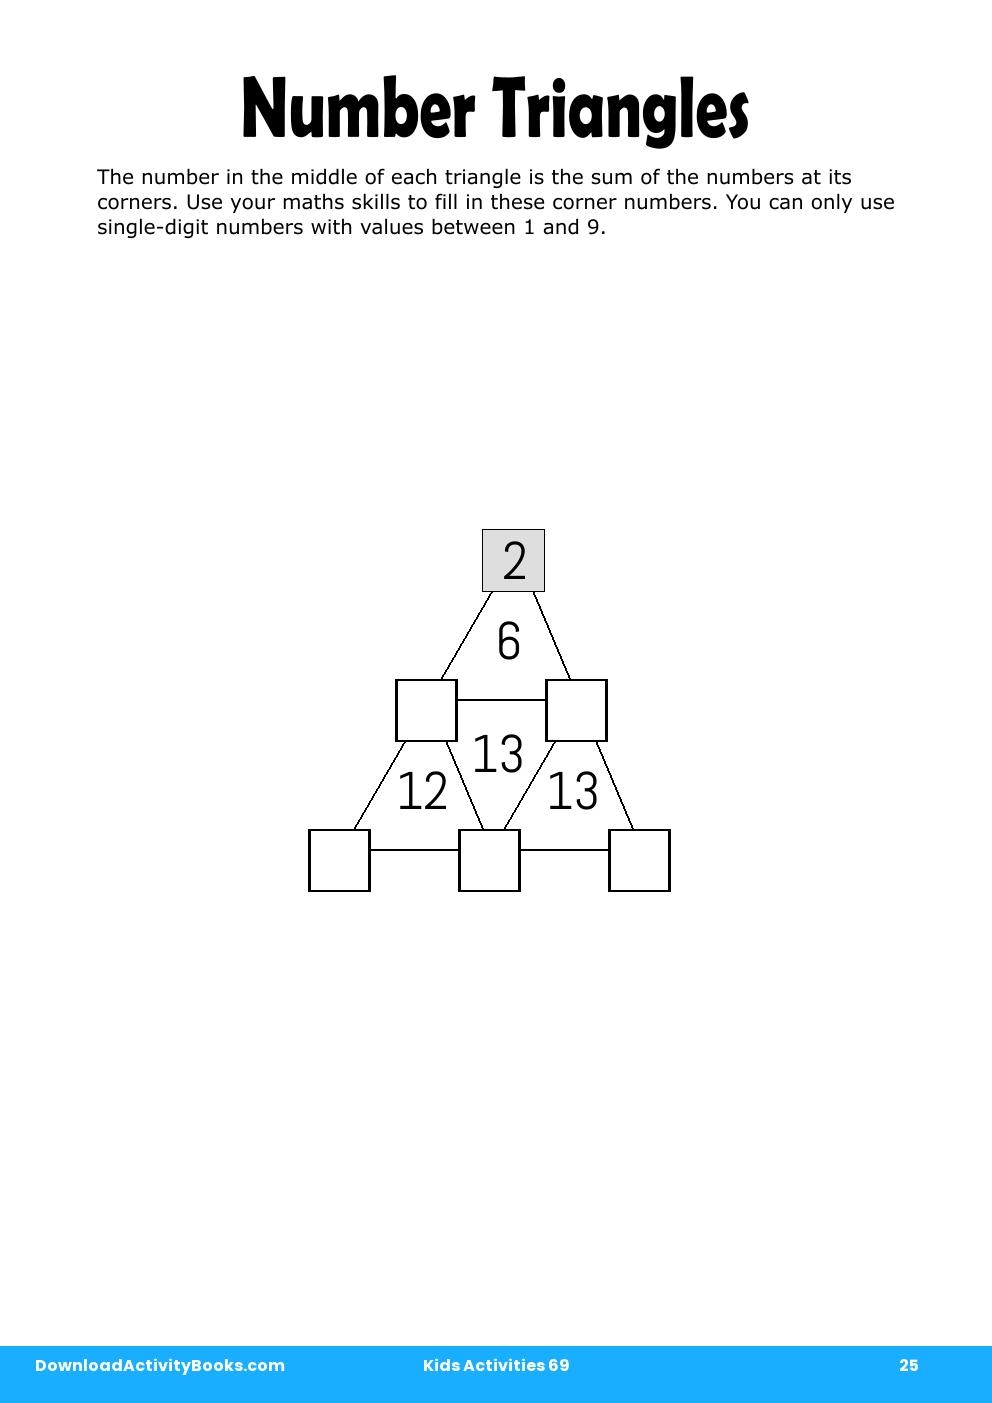 Number Triangles in Kids Activities 69